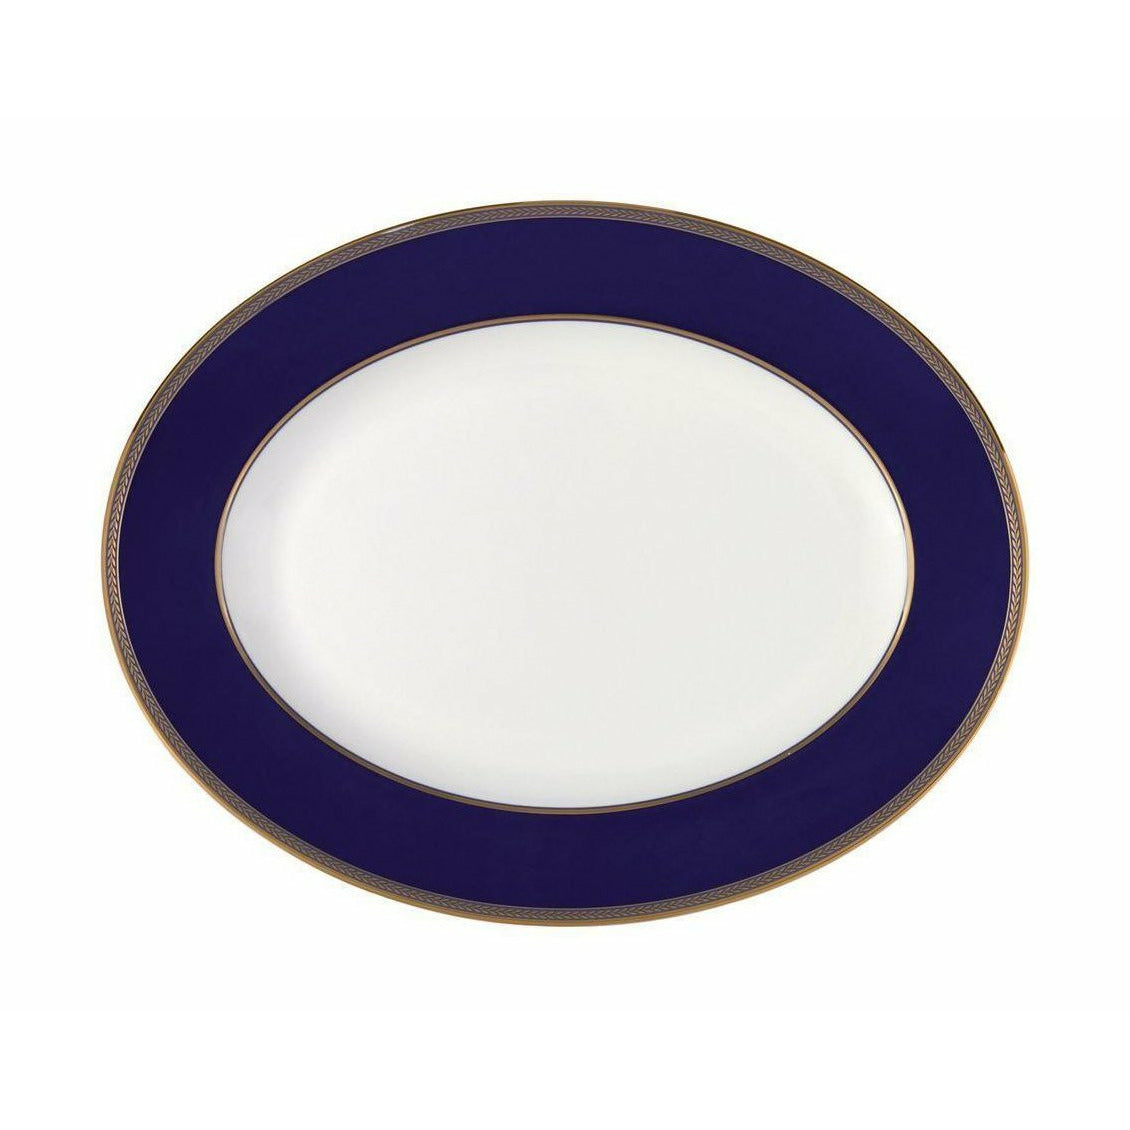 Wedgwood Renaissance Gold Oval Bowl 35 cm, hvid/blå